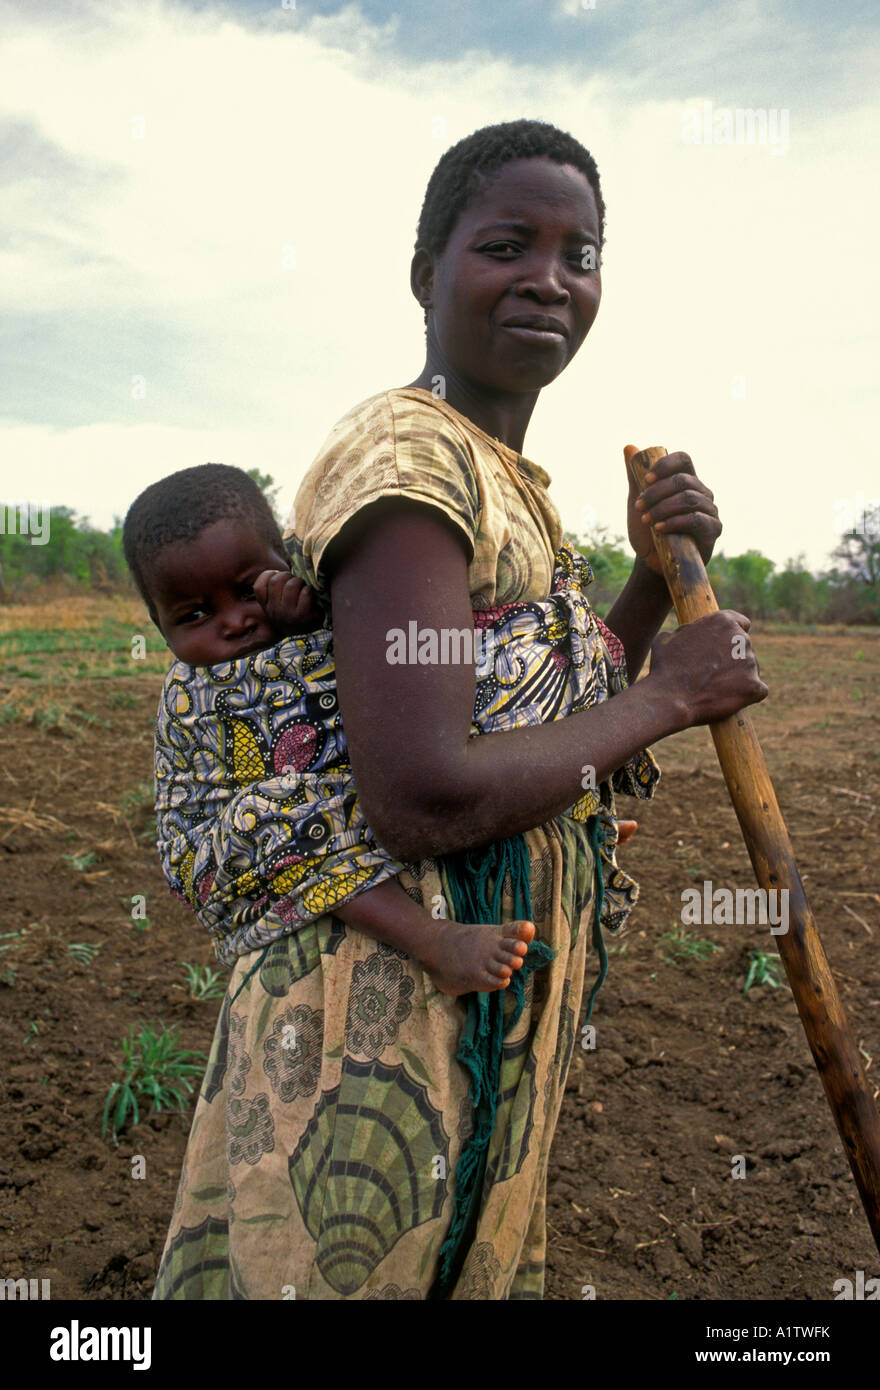 Los Ciudadanos De Zimbabwemujer De Zimbabwe La Mujer Adulta La Madre Y El Niño Llevando El 6629